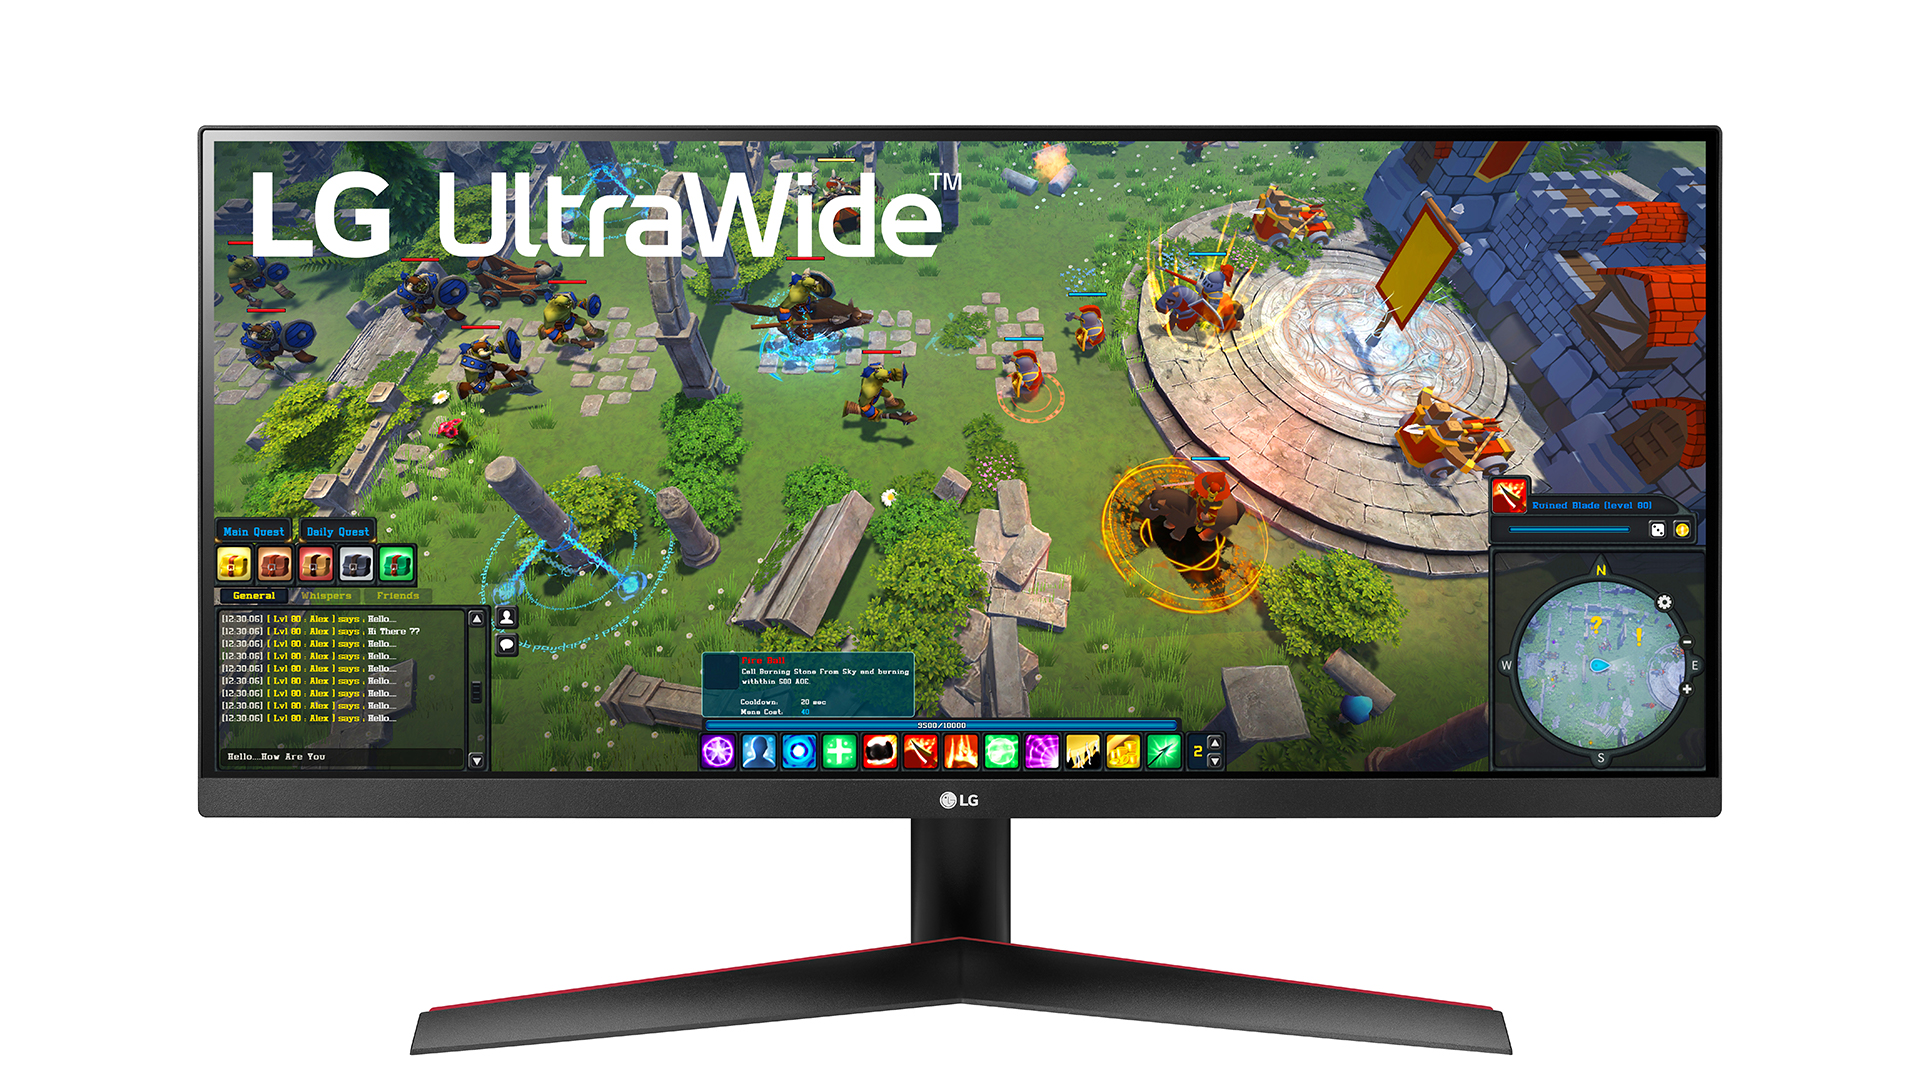 LG 推出 3 款 21:9 UltraWide IPS 全高清屏幕 擁有 HDR 10 和 sRGB 95%至99%色域【電腦屏幕資訊】